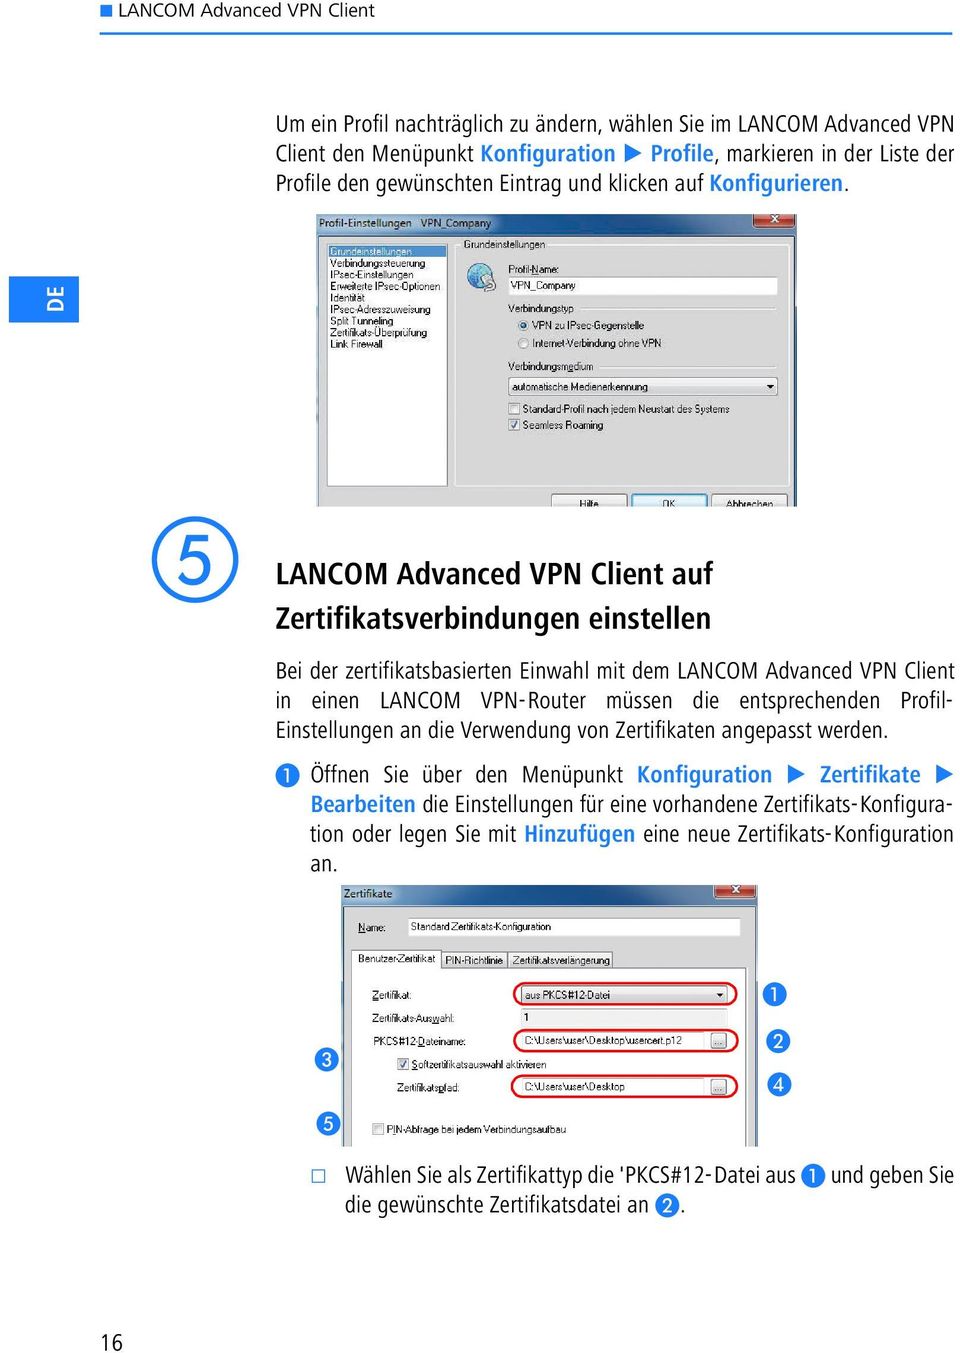 DE LANCOM Advanced VPN Client auf Zertifikatsverbindungen einstellen Bei der zertifikatsbasierten Einwahl mit dem LANCOM Advanced VPN Client in einen LANCOM VPN-Router müssen die entsprechenden